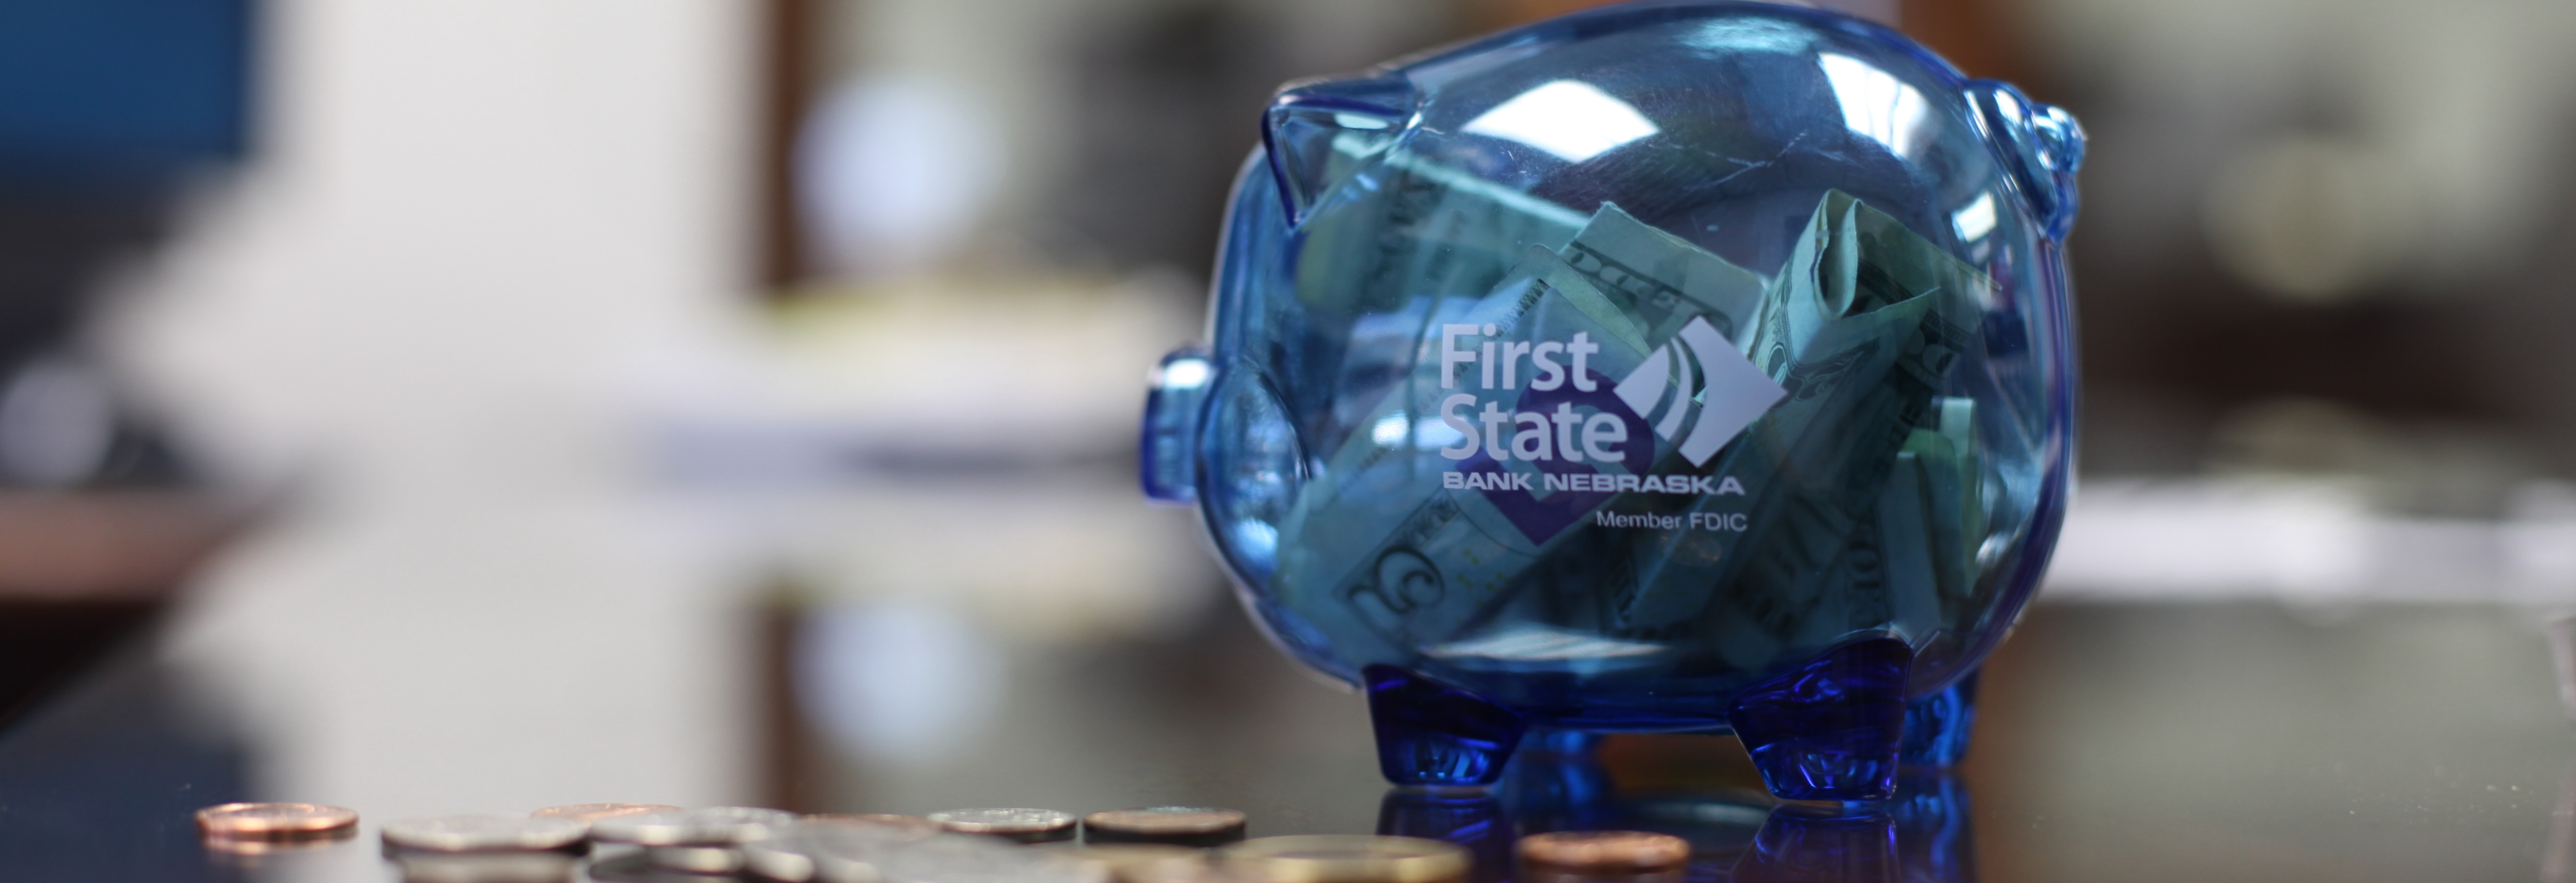 First State Bank Nebraska piggy bank